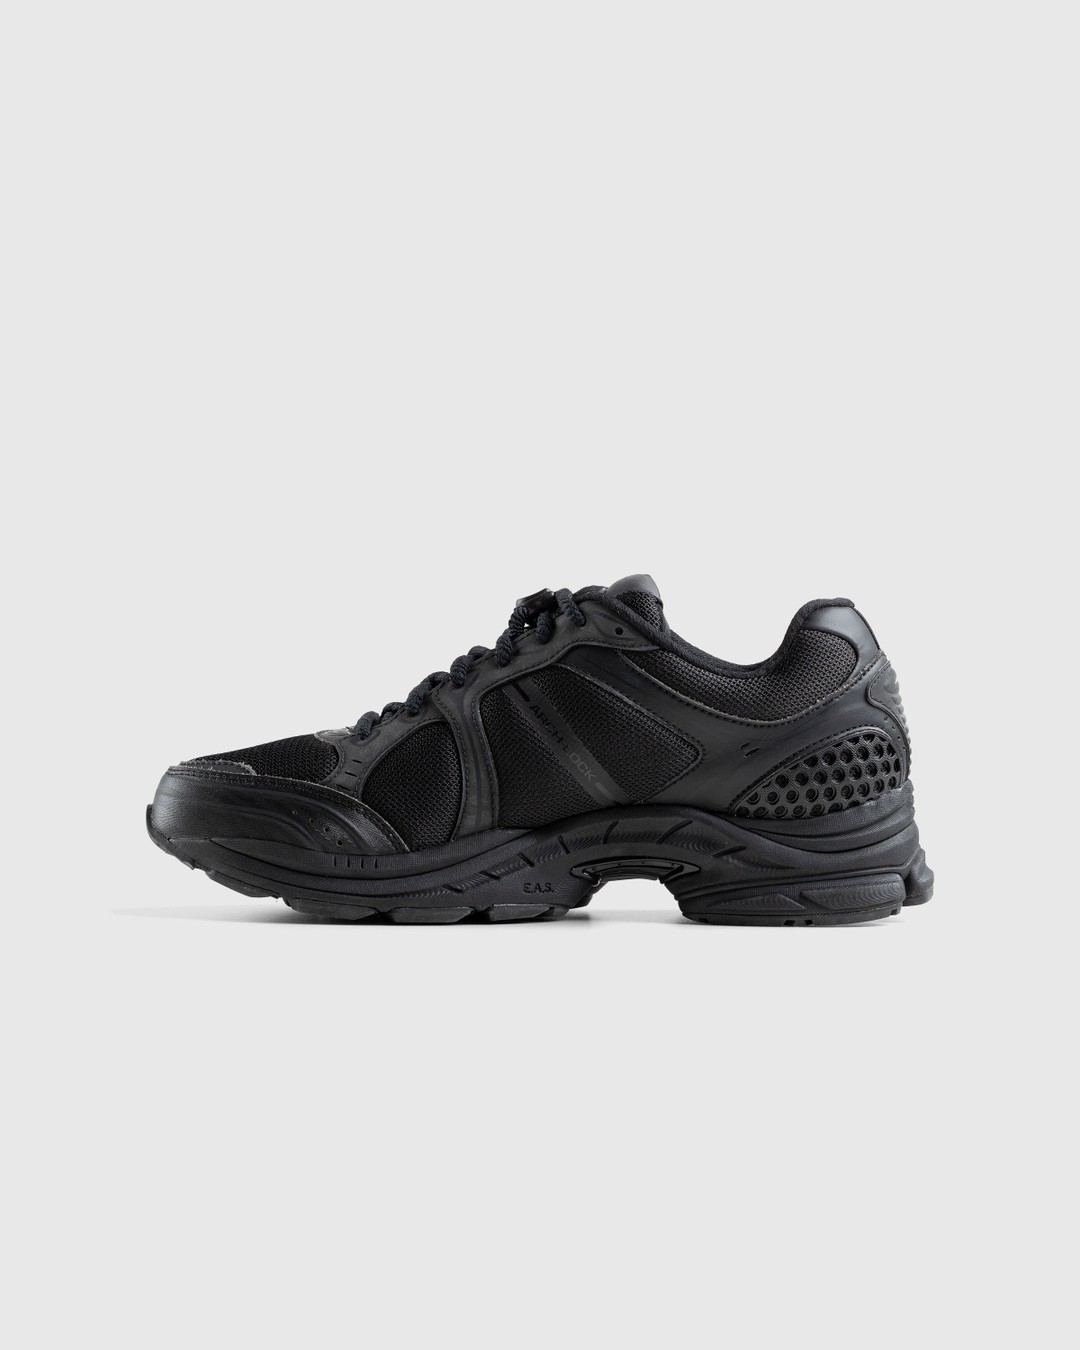 Saucony – ProGrid Triumph 4 Black - Sneakers - Black - Image 2